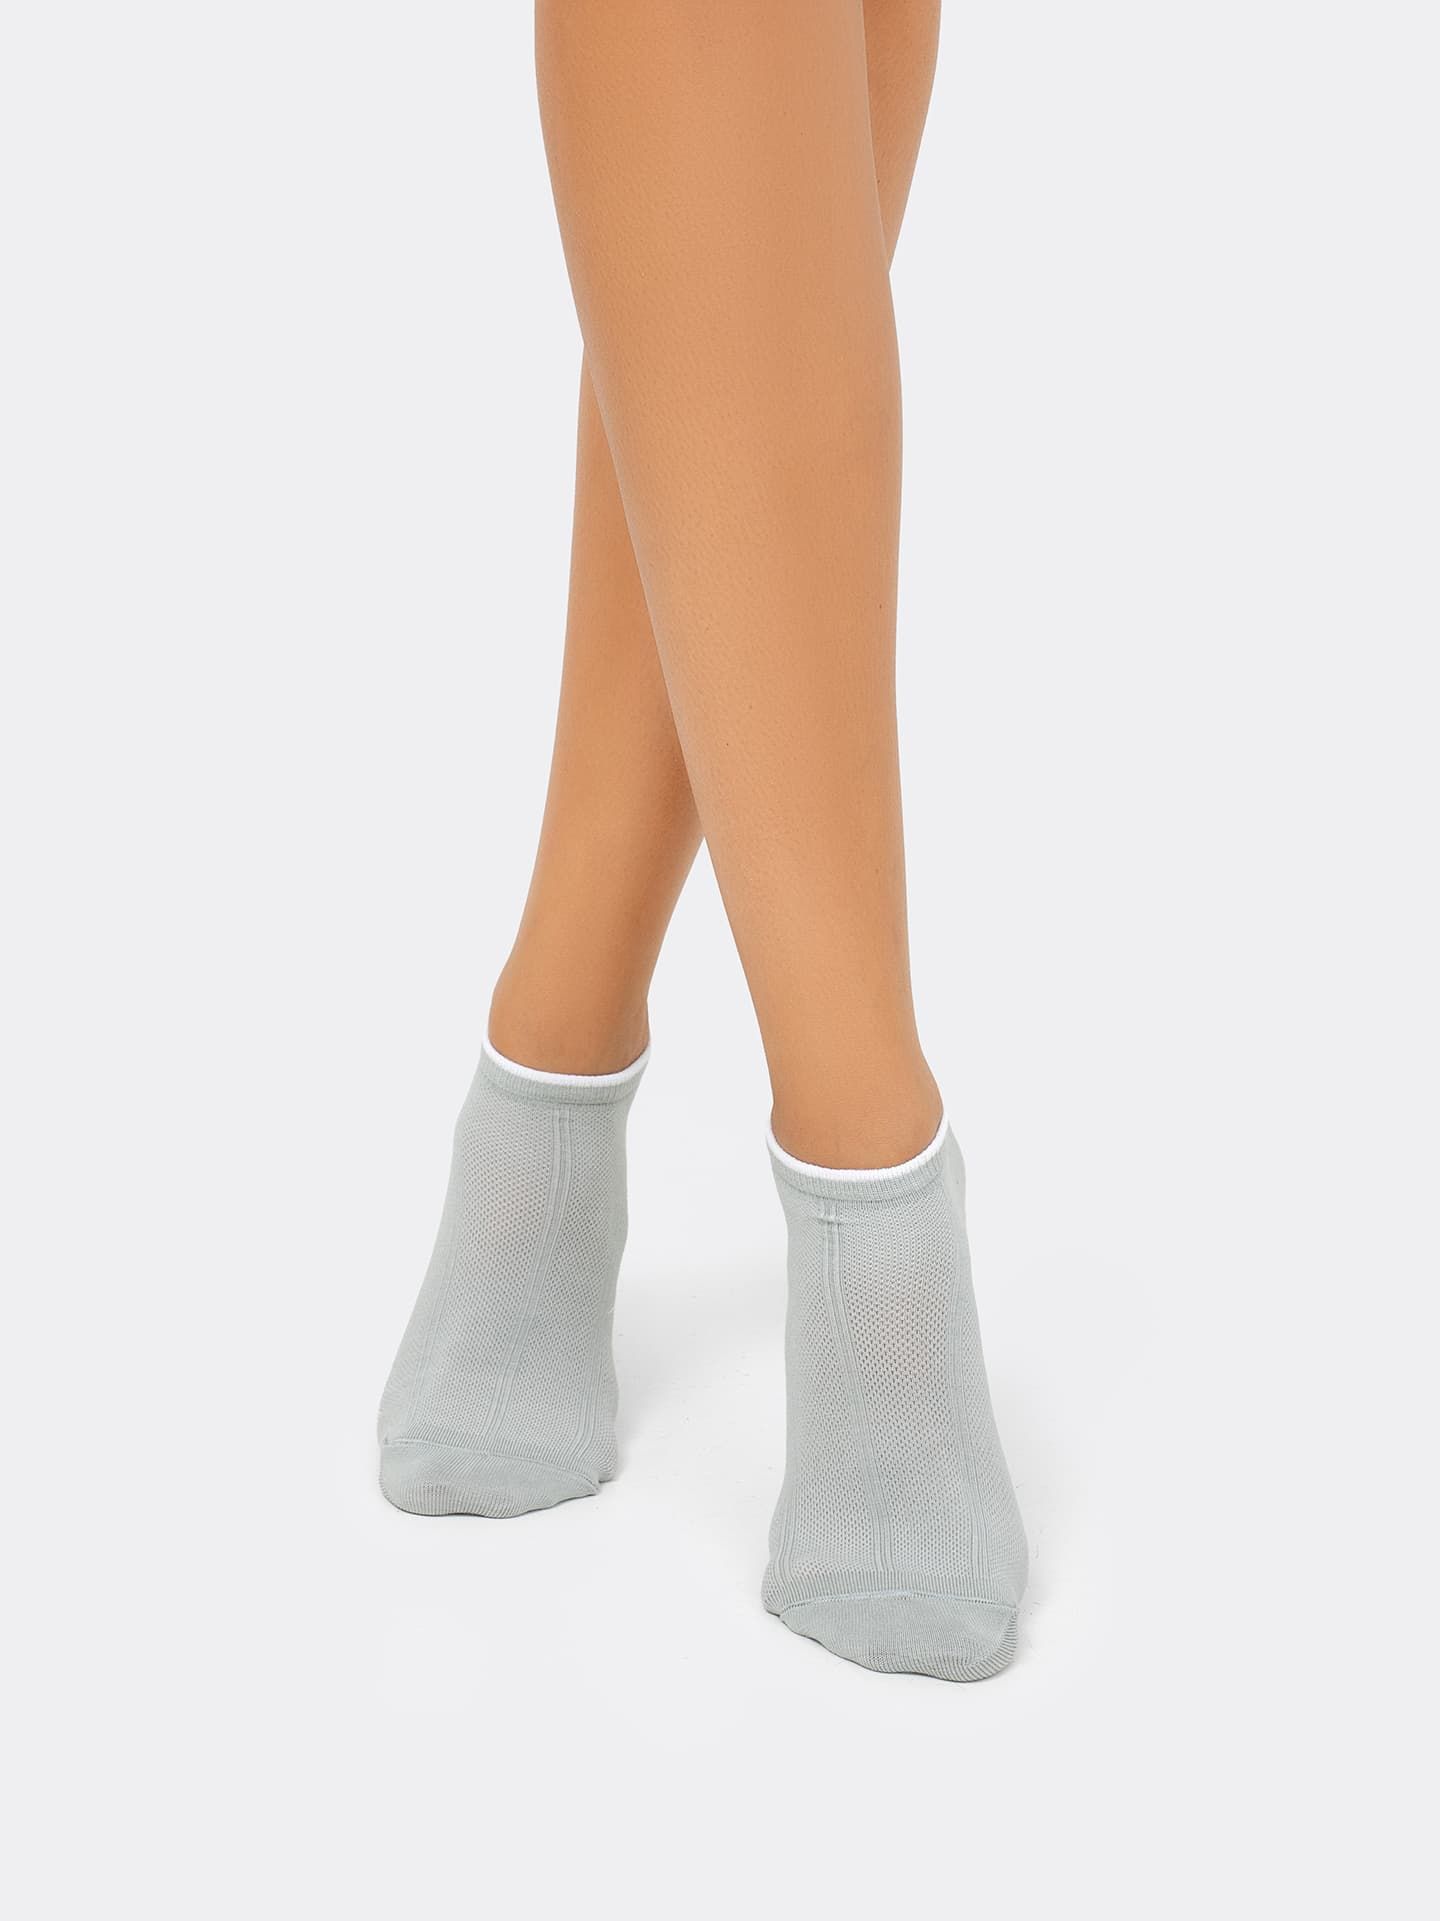 Короткие женские носки светло-оливкового цвета